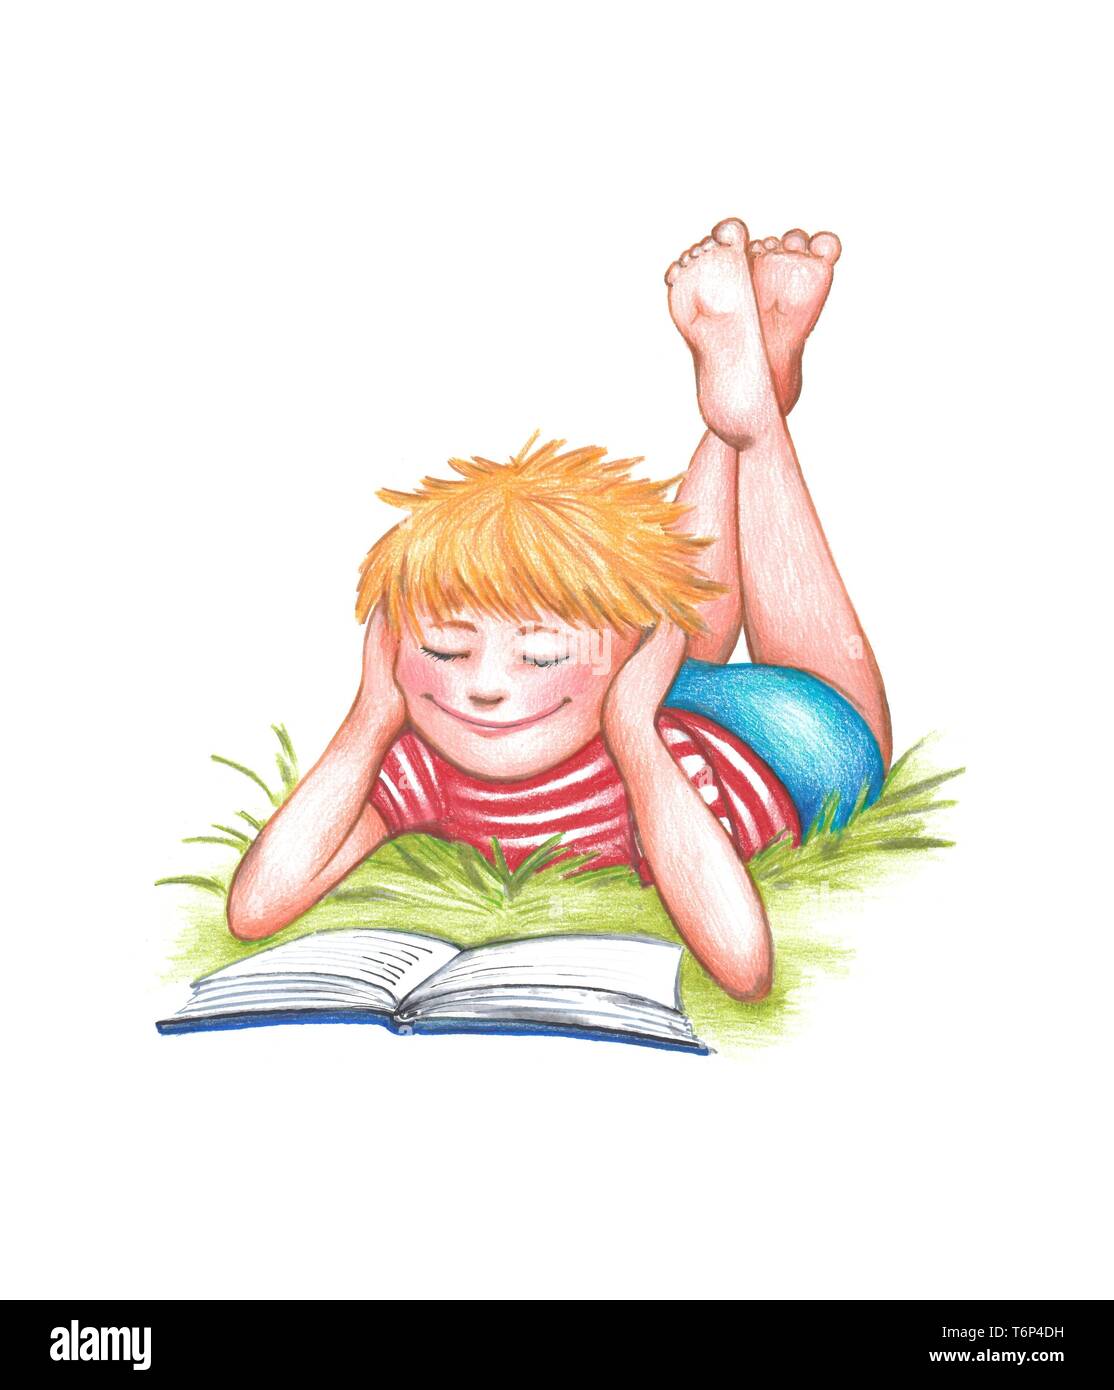 Junge, blond, liegt auf einer Wiese und liest ein Buch lachen, Clipping, Hintergrund weiß, Deutschland Stockfoto